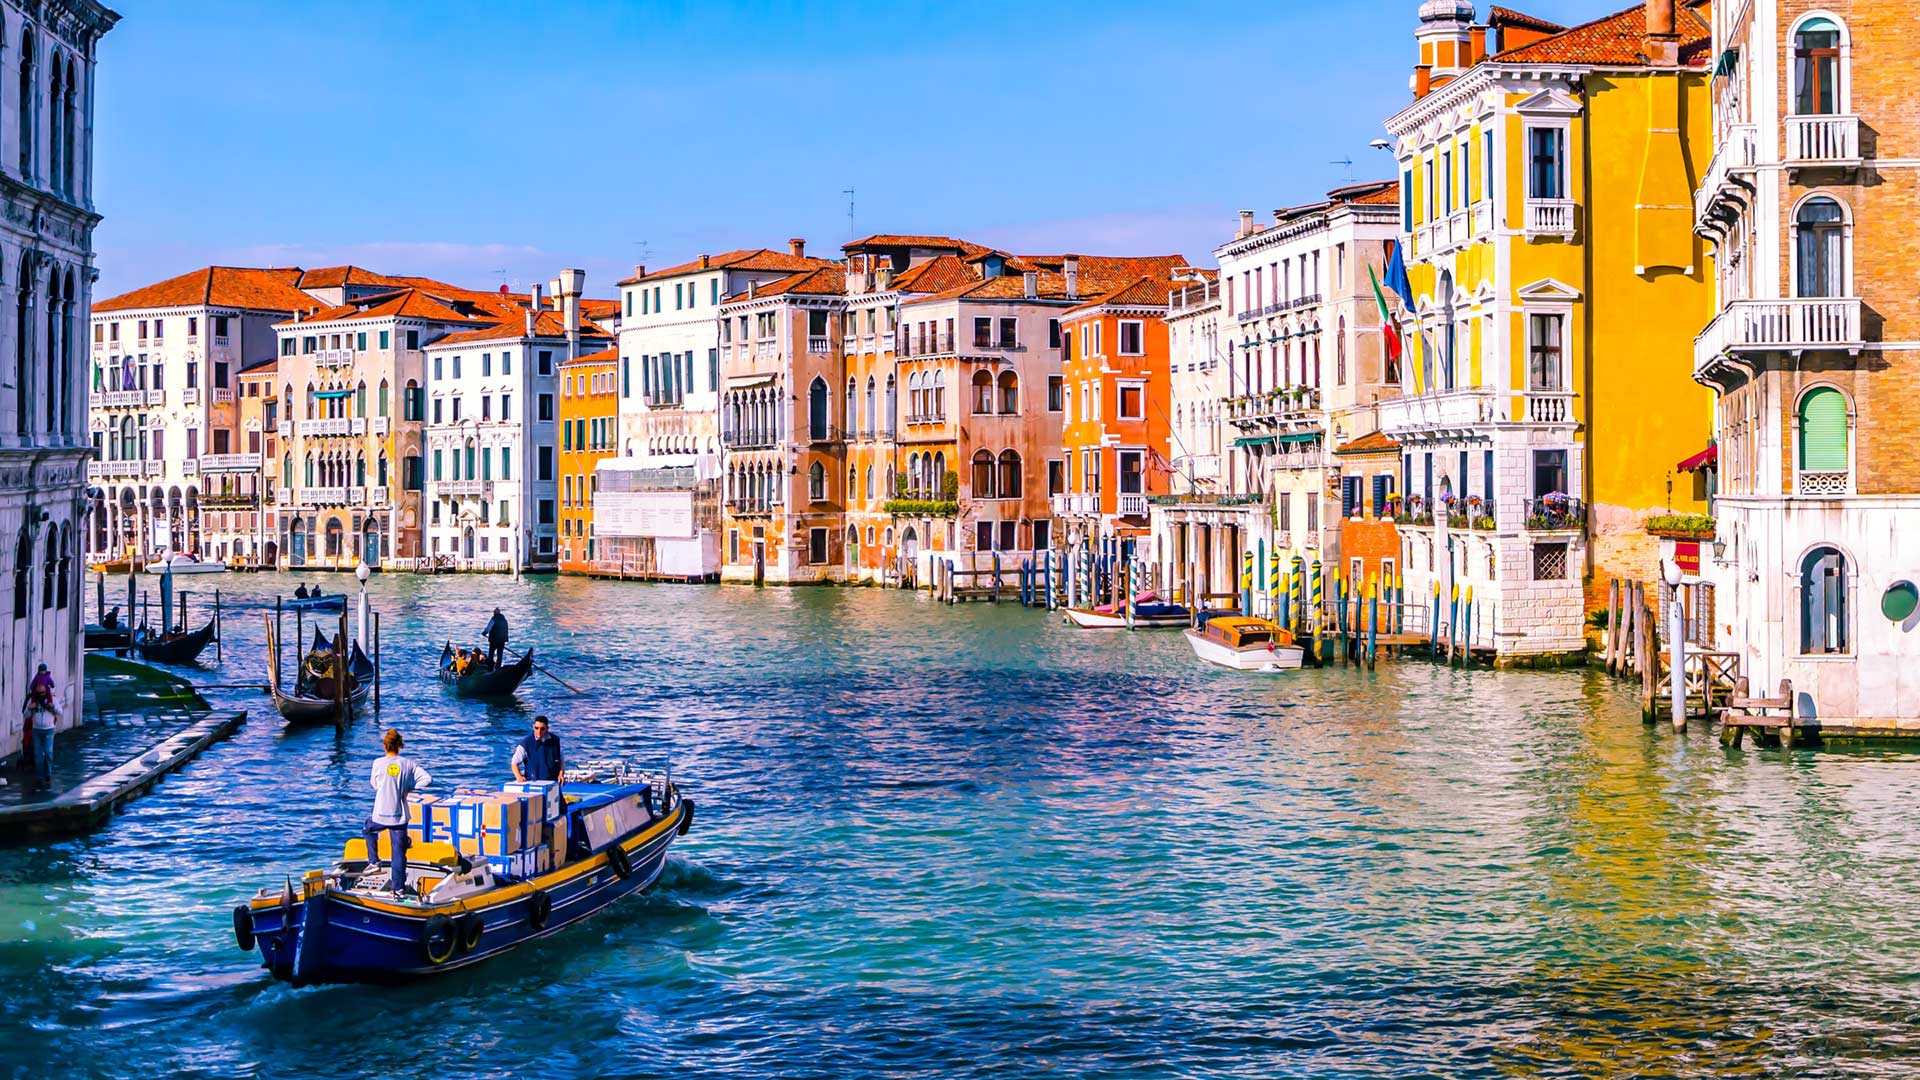 Einer der Top Gründe für eine Städtereise: Venedig. schöne gelbe altertümliche Häuser am Wasser.